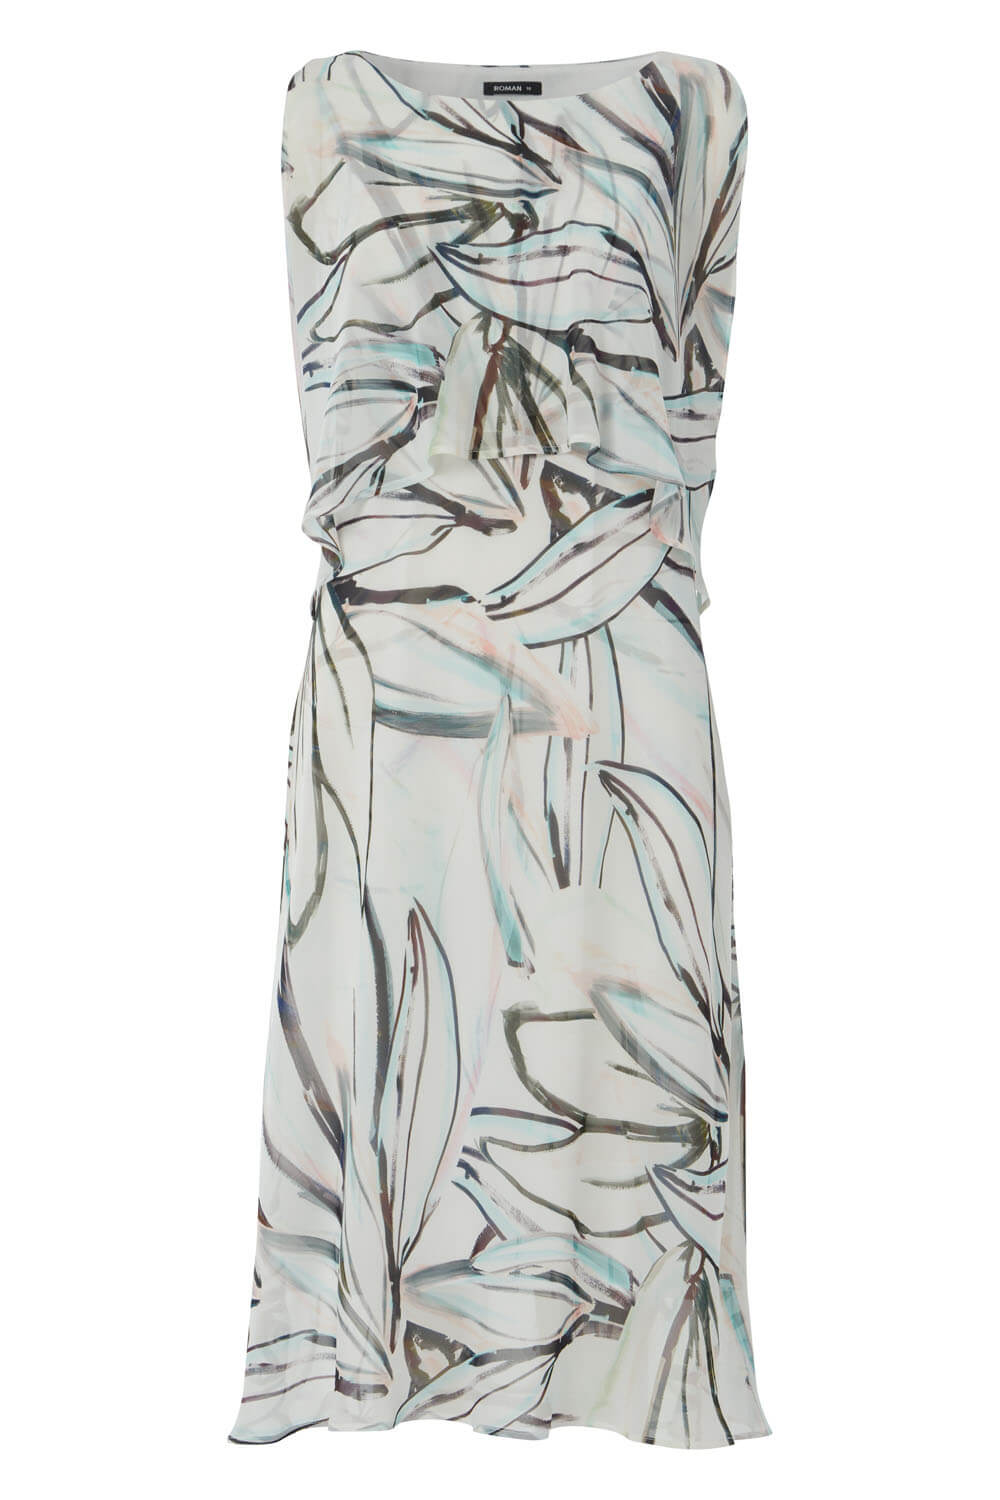 Ivory  Abstract Print Chiffon Layer Midi Dress, Image 5 of 5